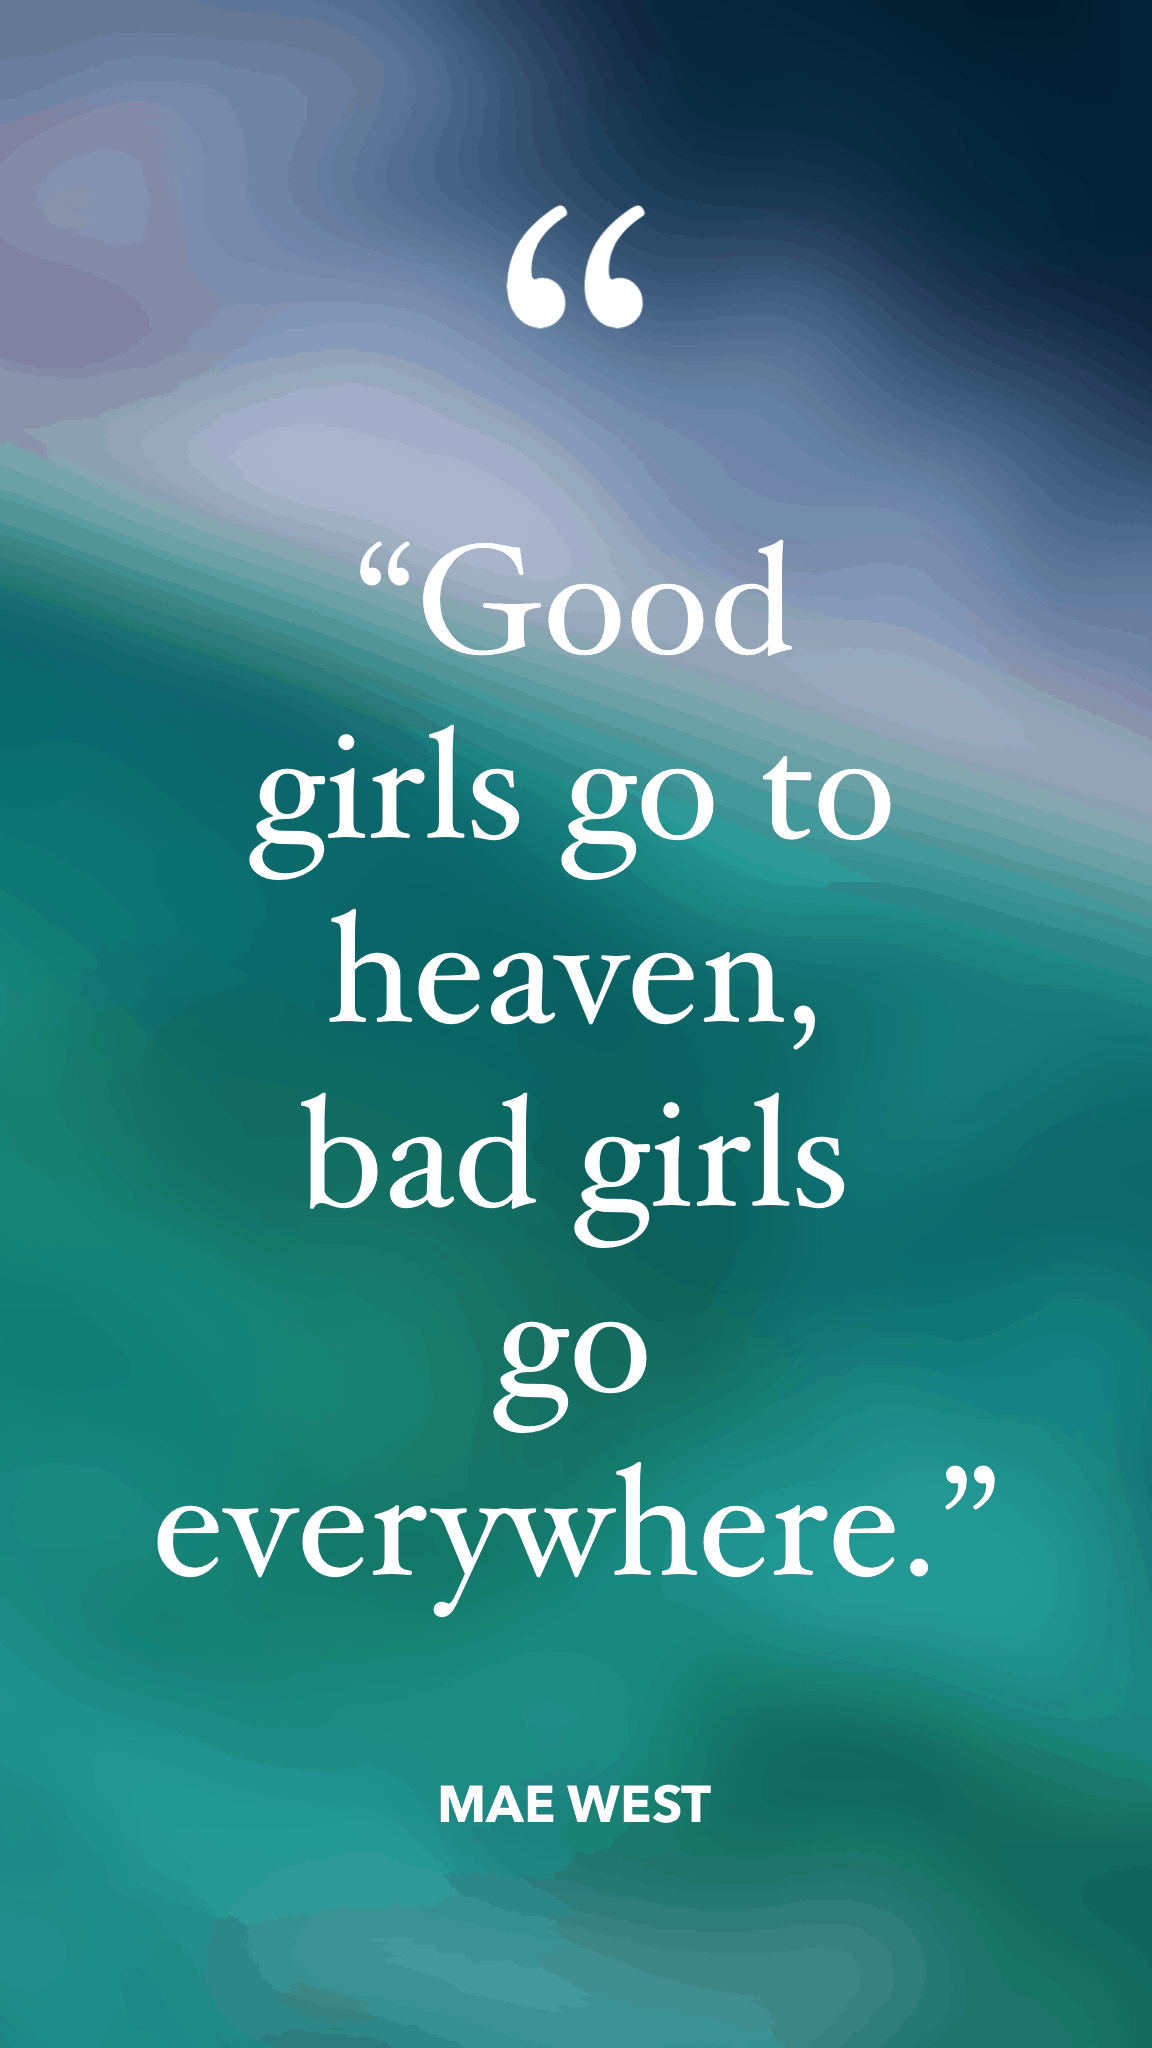 Mae West - good girls go to heaven bad girls go everywhere